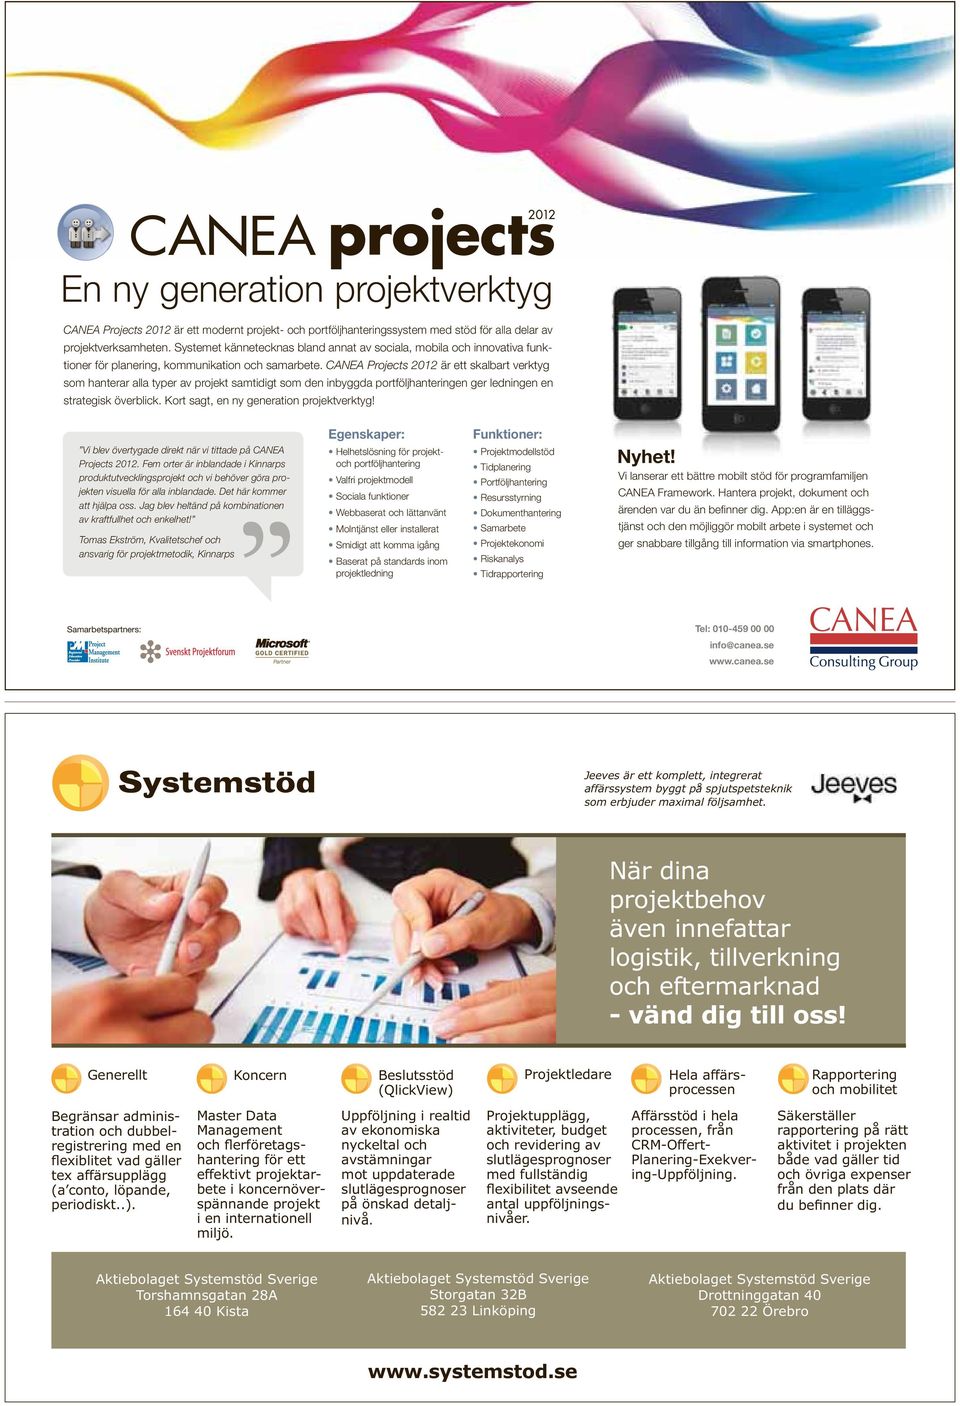 CANEA Projects 2012 är ett skalbart verktyg som hanterar alla typer av projekt samtidigt som den inbyggda portföljhanteringen ger ledningen en strategisk överblick.